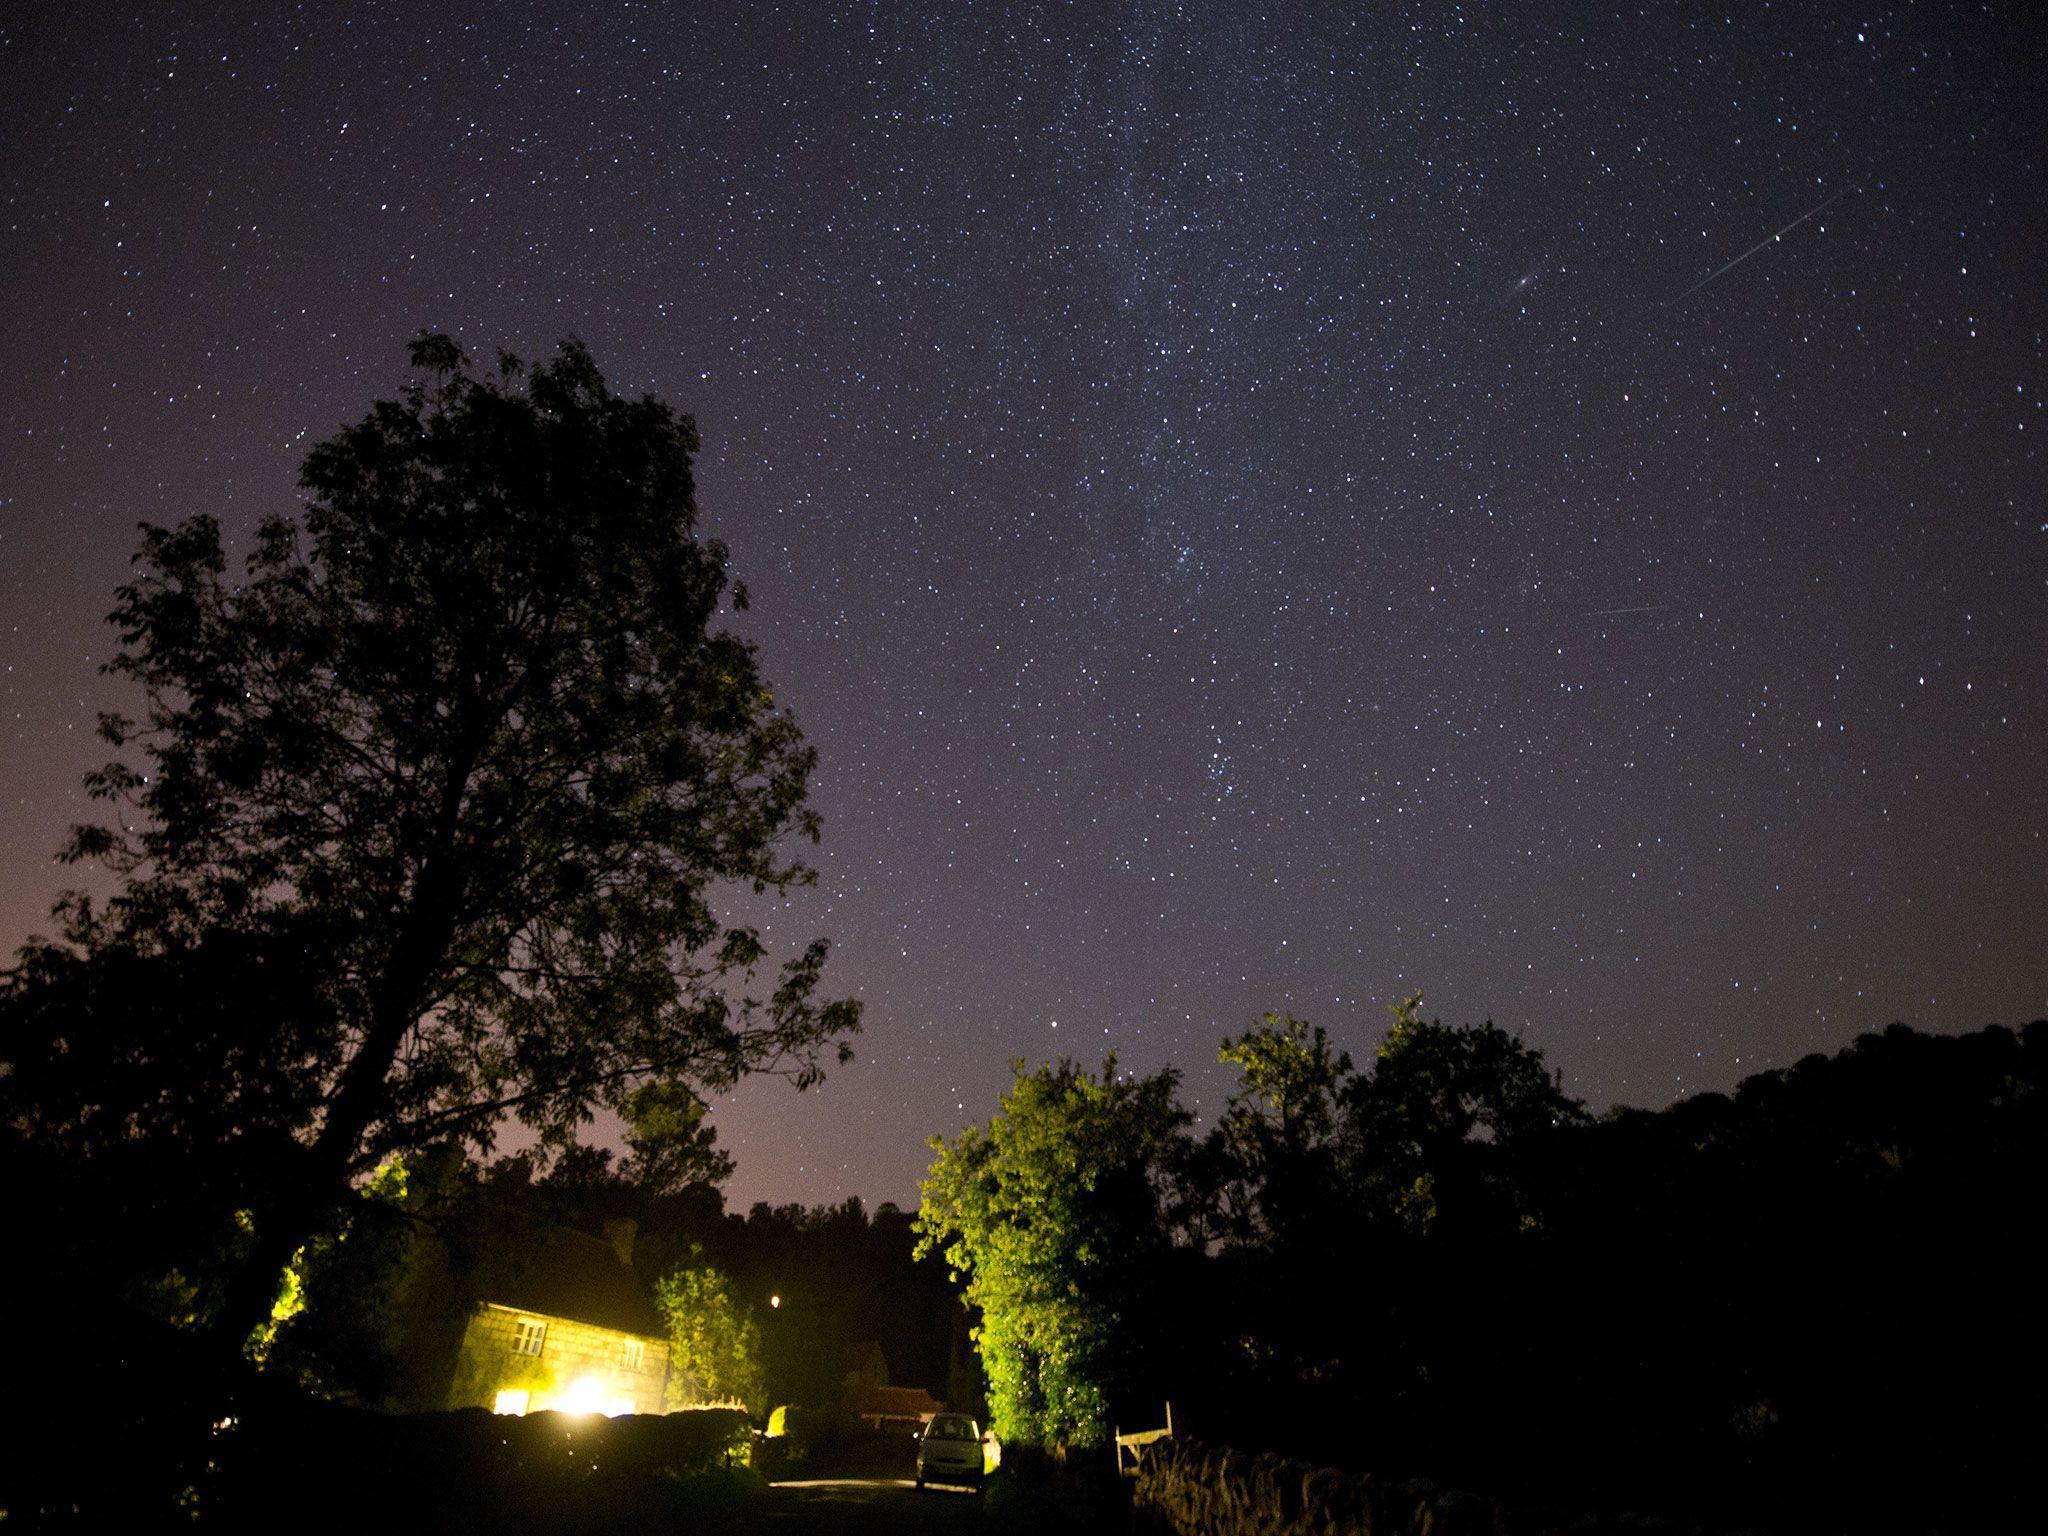 Perseid meteor shower: 16 incredible image of shooting stars